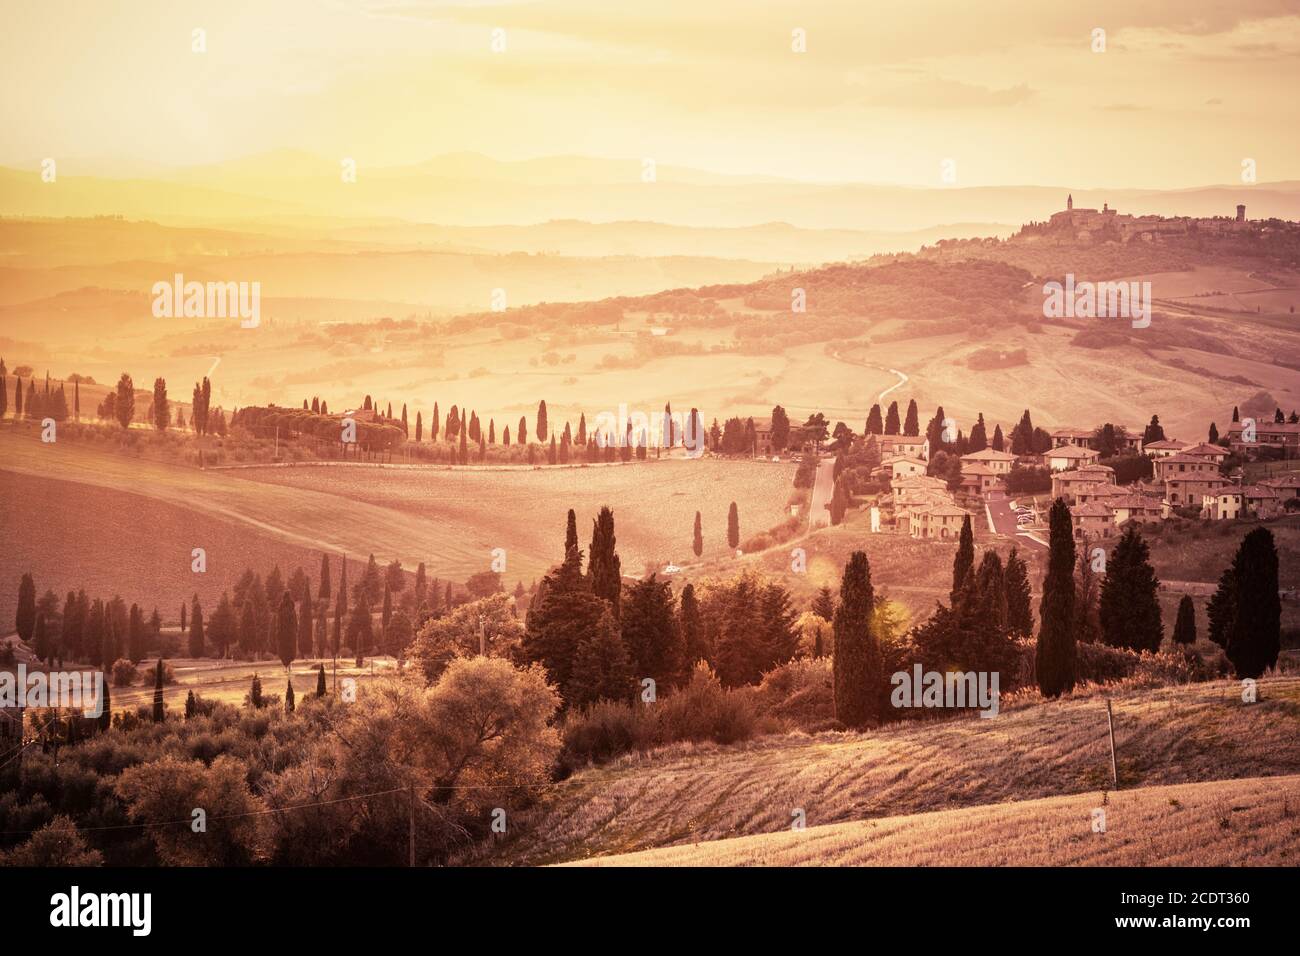 Magnifique paysage de Toscane avec cyprès, fermes et petites villes médiévales, Italie. Coucher de soleil vintage Banque D'Images